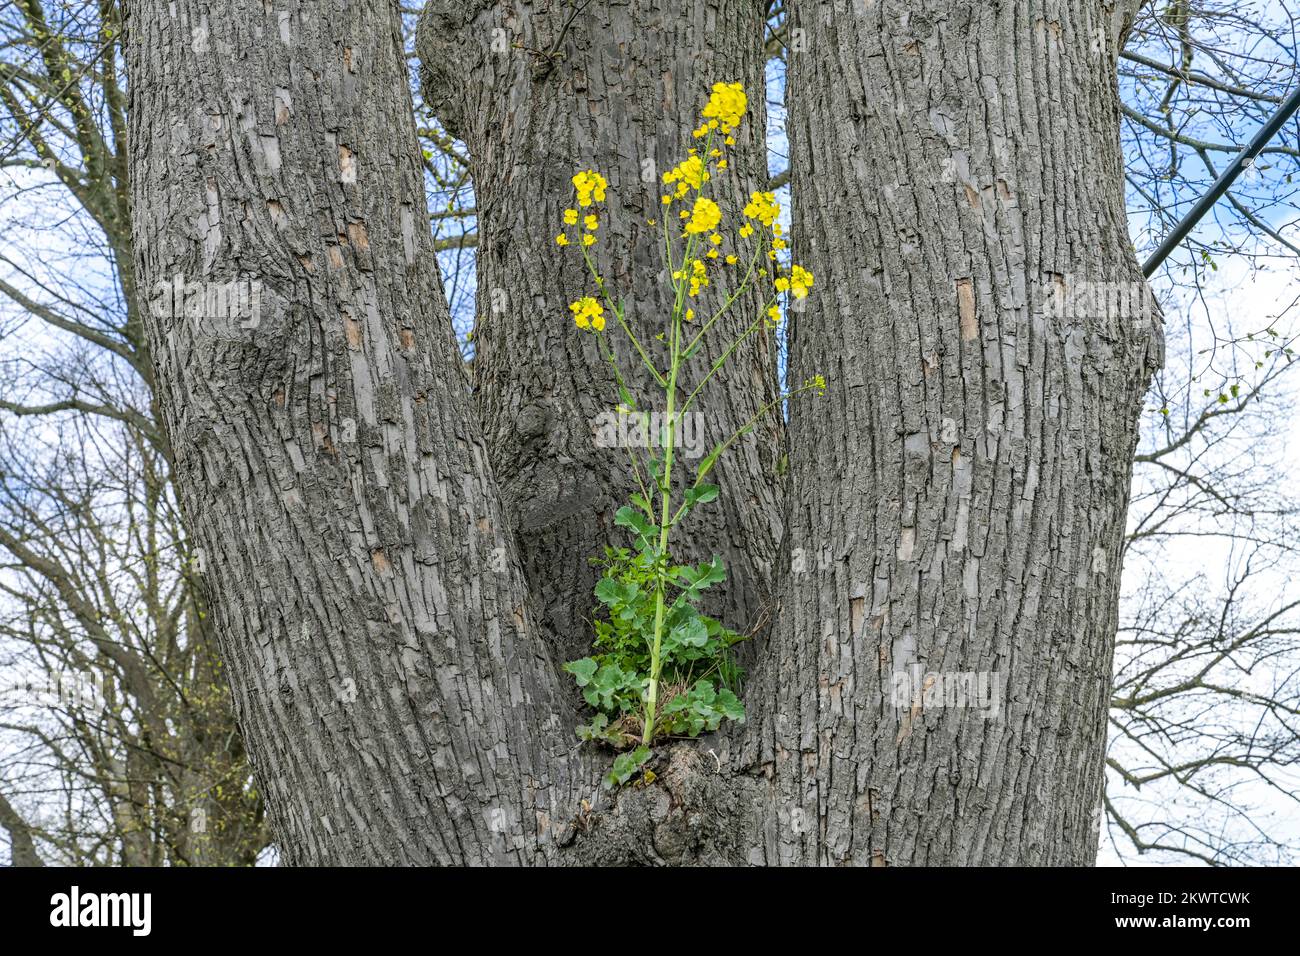 Raps wächst in einem Baum, Mecklenburg-Vorpommern, Deutschland Stock Photo